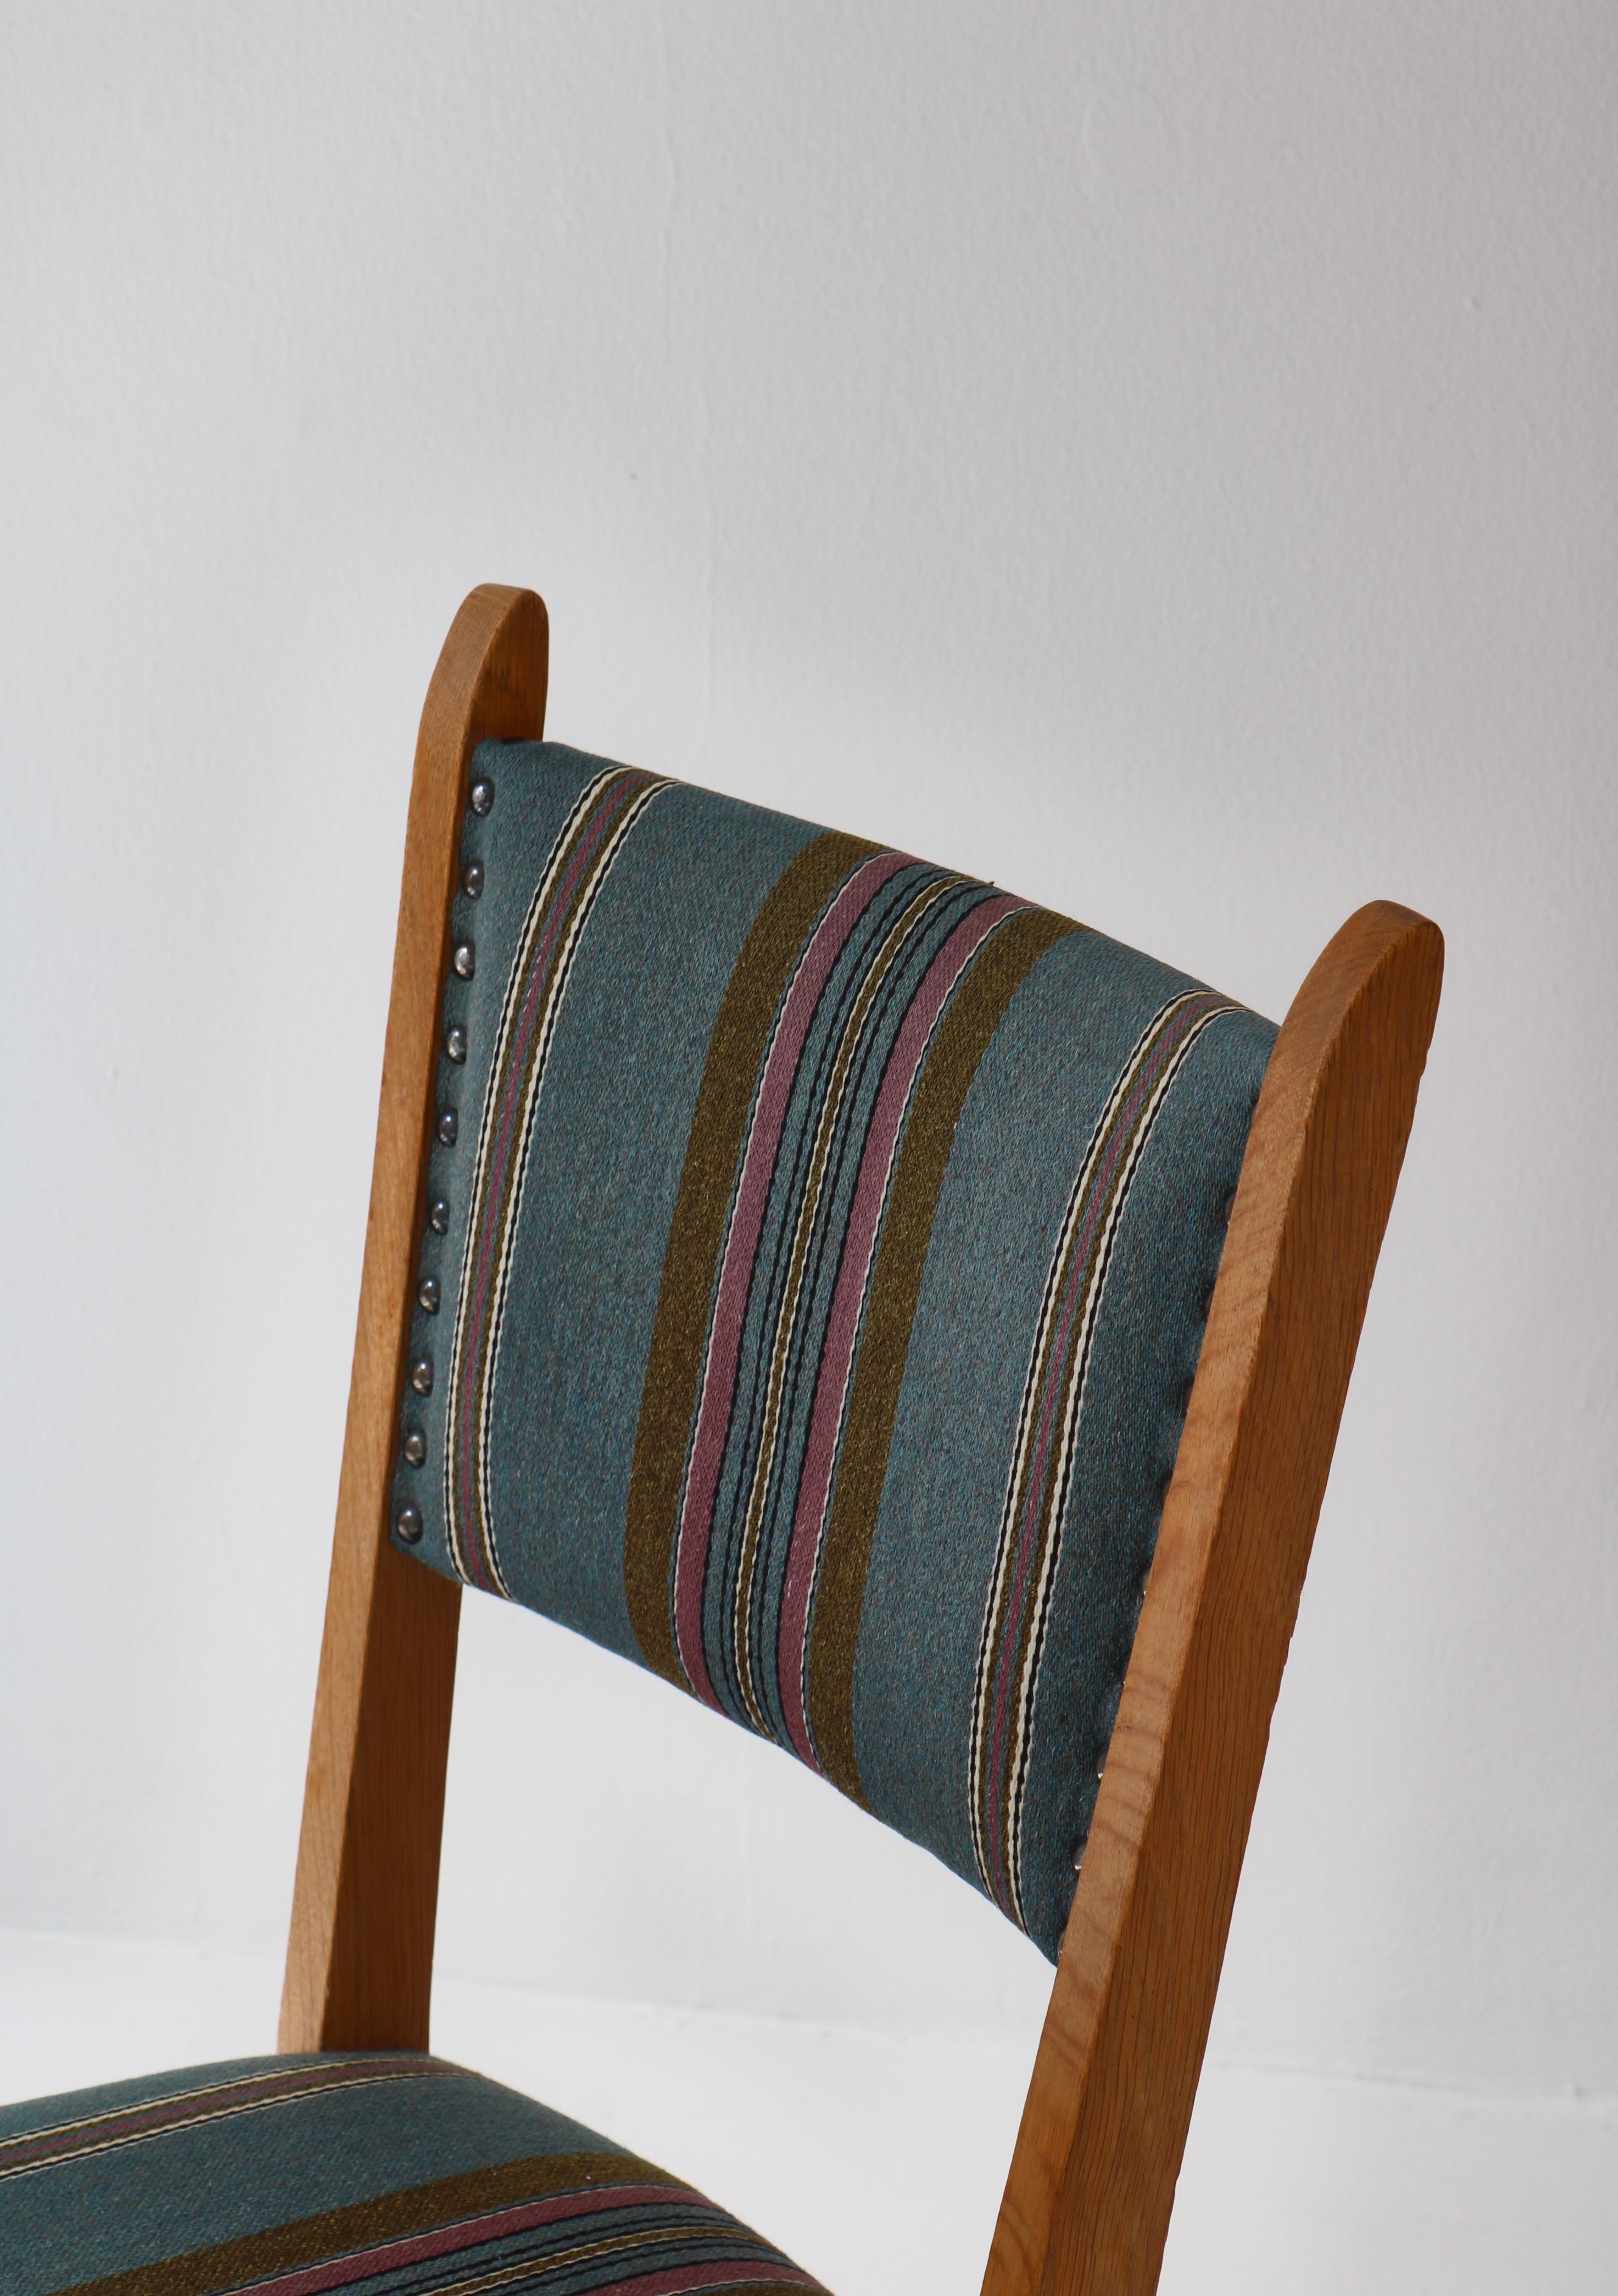 Mid-20th Century 1960s Side Chair in Oak & Wool Fabric by Henry Kjærnulf, Danish Modern For Sale